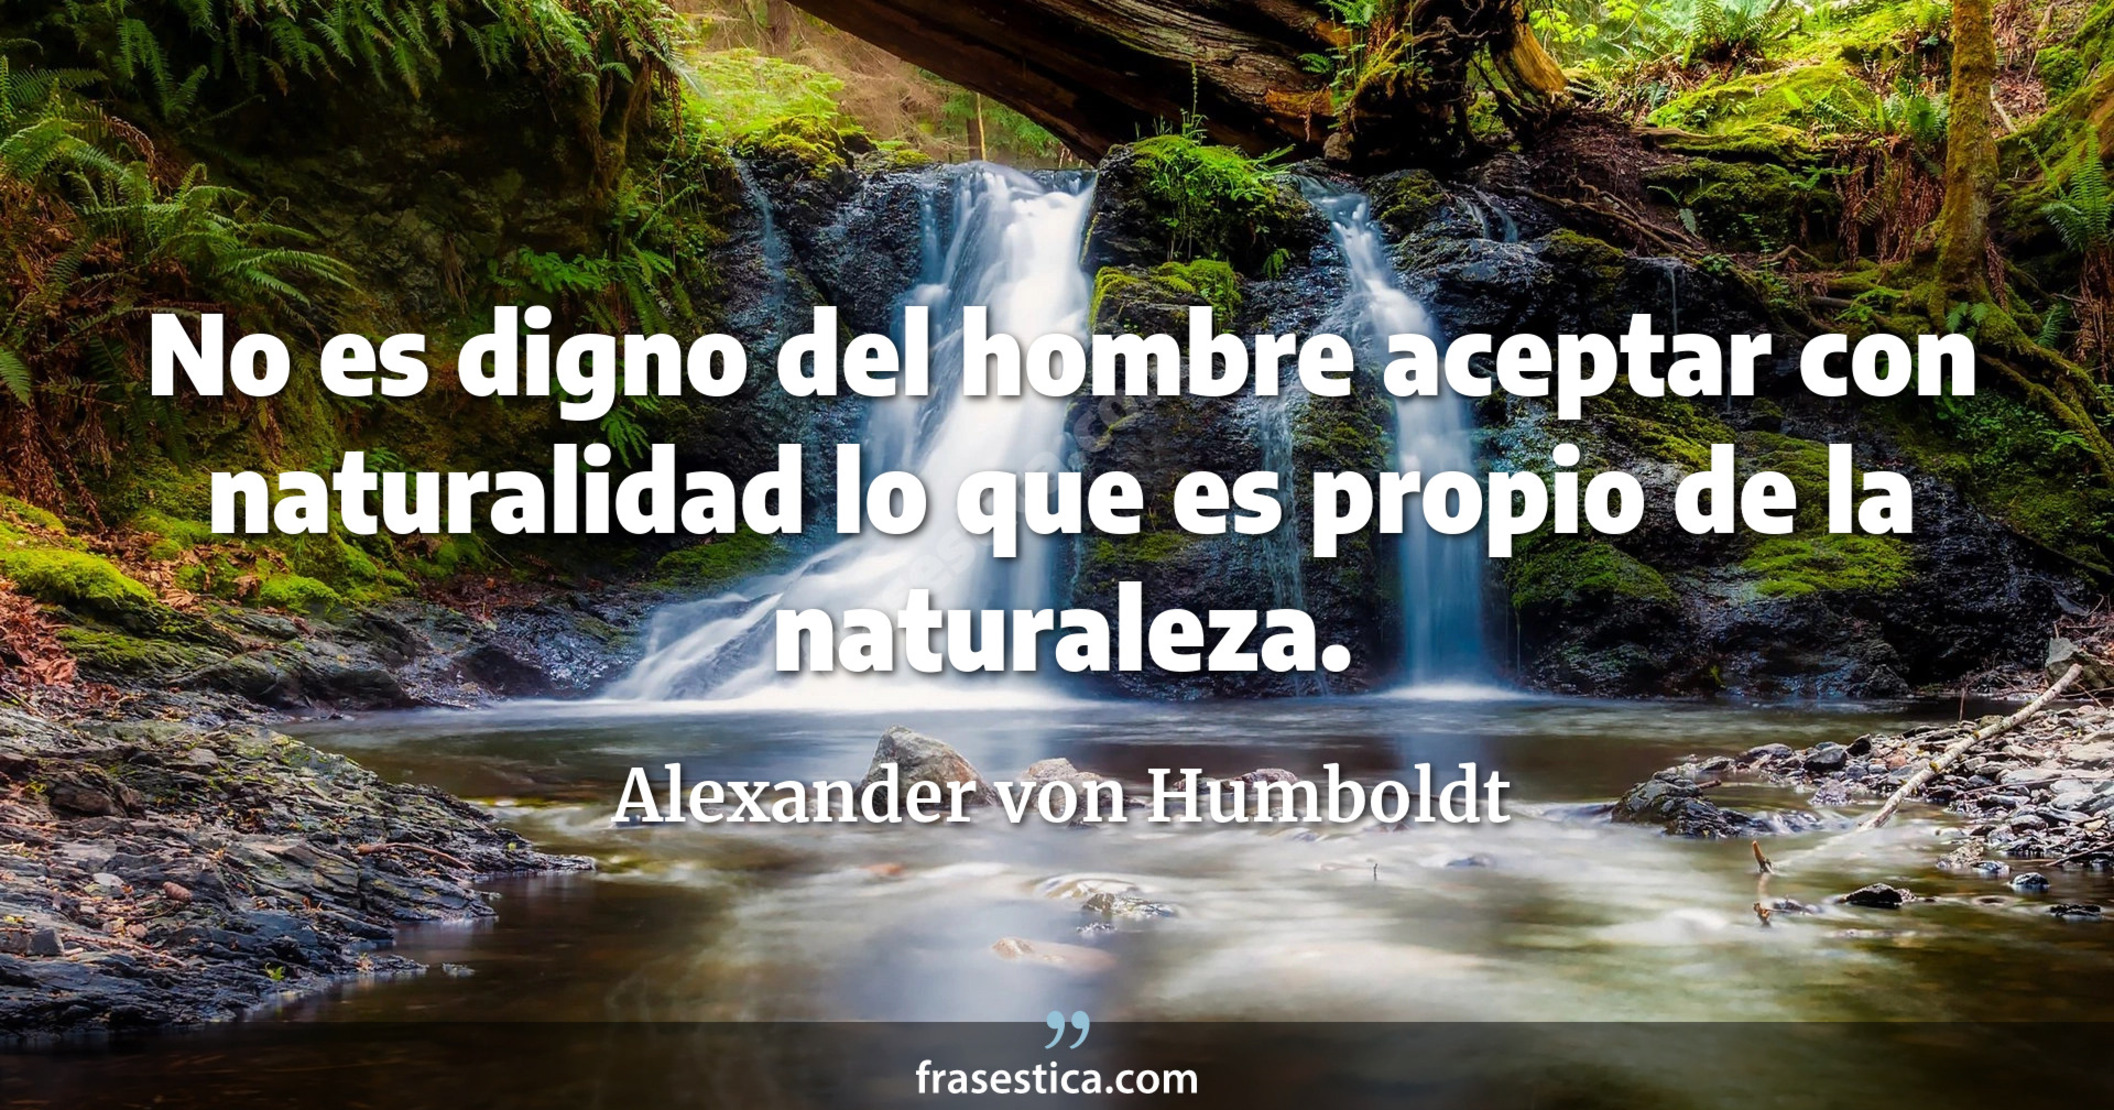 No es digno del hombre aceptar con naturalidad lo que es propio de la naturaleza. - Alexander von Humboldt